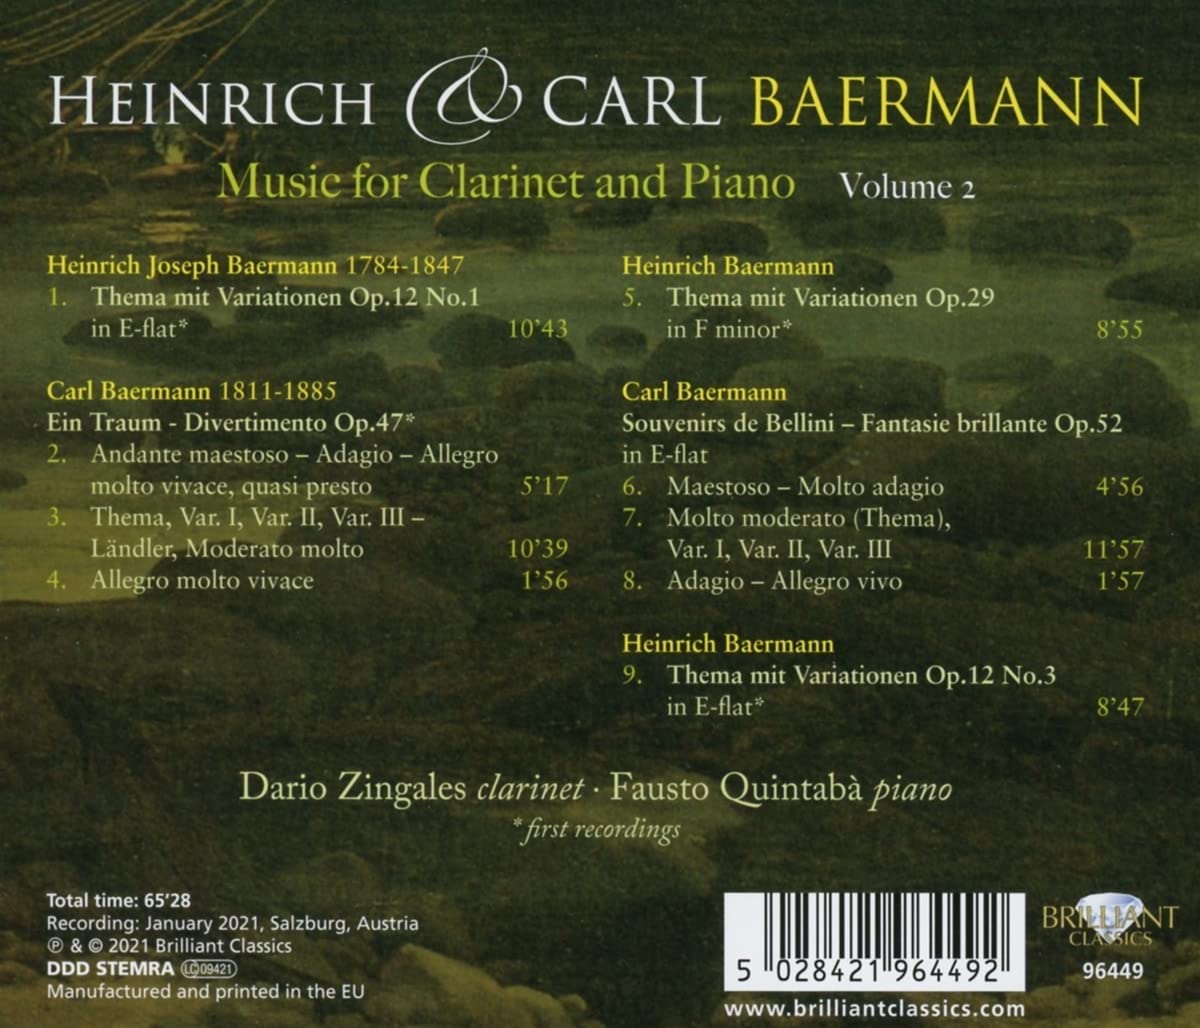 하인리히 / 카를 바에르만: 클라리넷, 피아노 모음곡 (Heinrich & Karl Baermann: Music for Clarinet and Piano) 